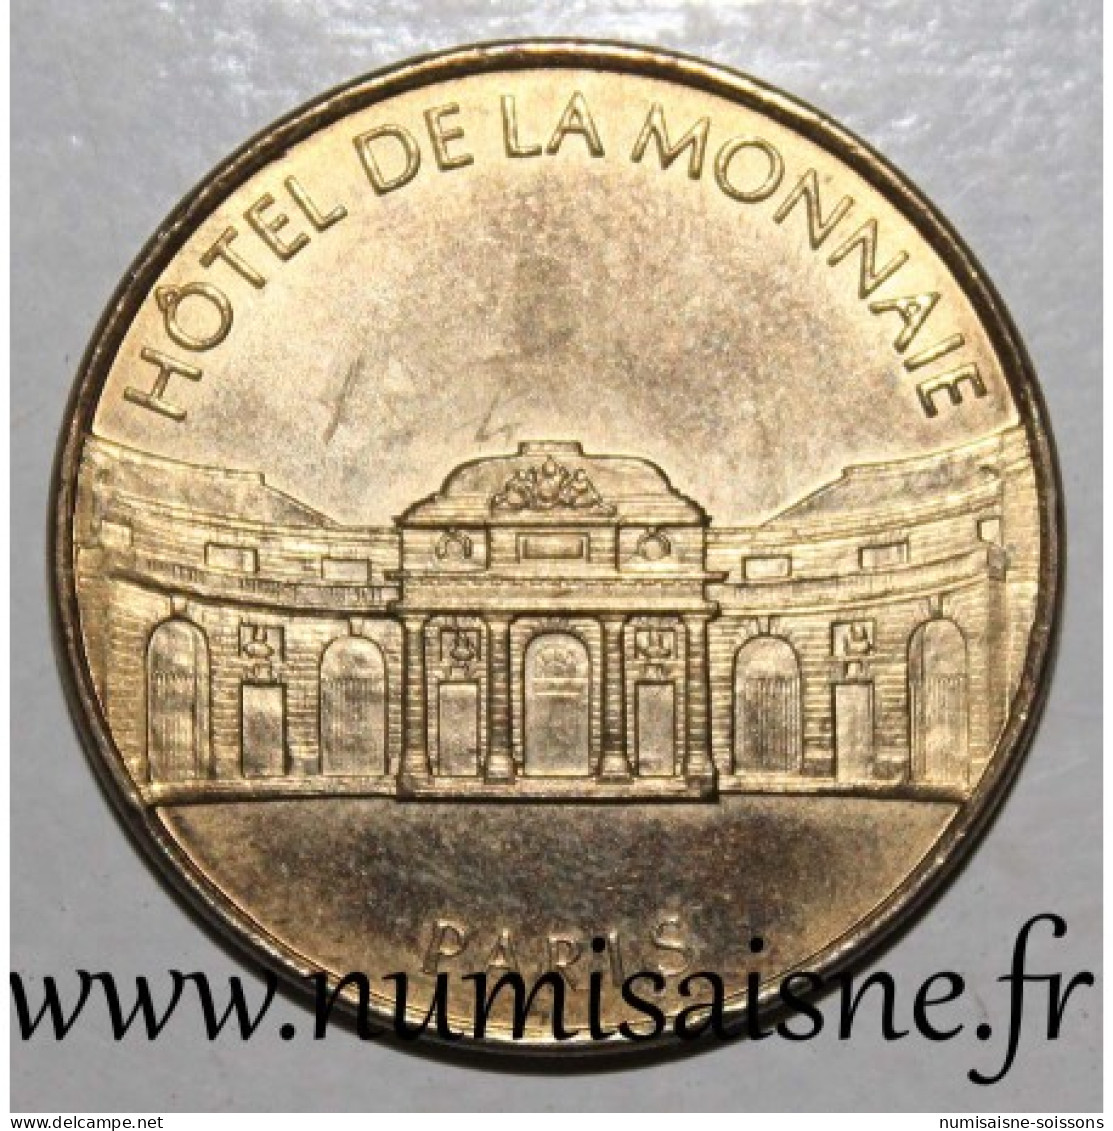 75 - PARIS - HOTEL DE LA MONNAIE - MDP - 1998 - Zonder Datum